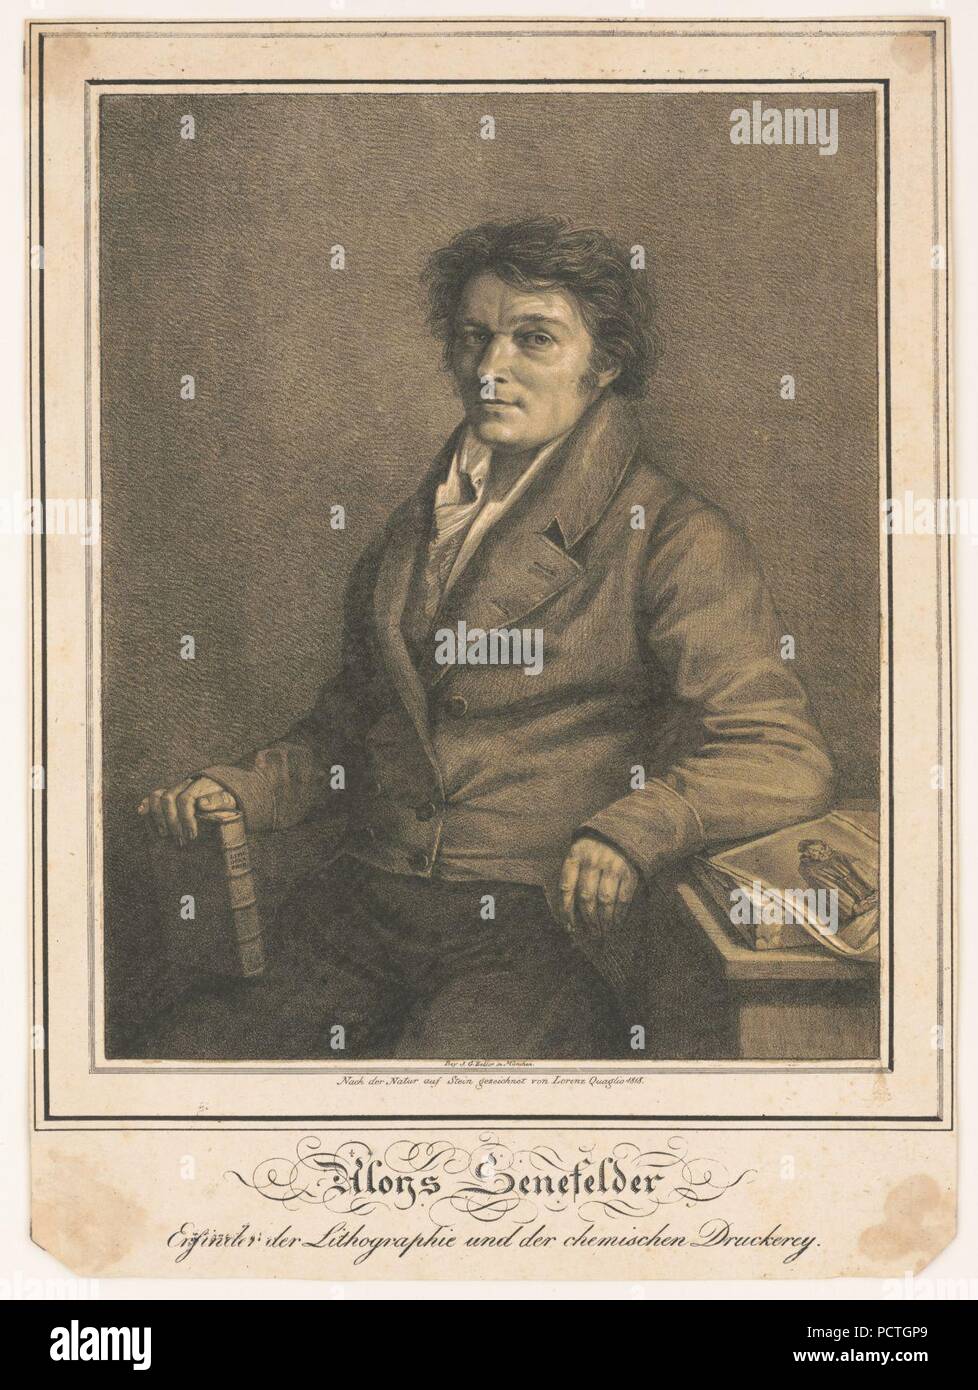 Aloys Senefelder-Enfinder der Lithographic und der chemischen Druckerey - Nach der Natur auf Stein gezeichnet von Lorenz Quaglio 1818. Stock Photo